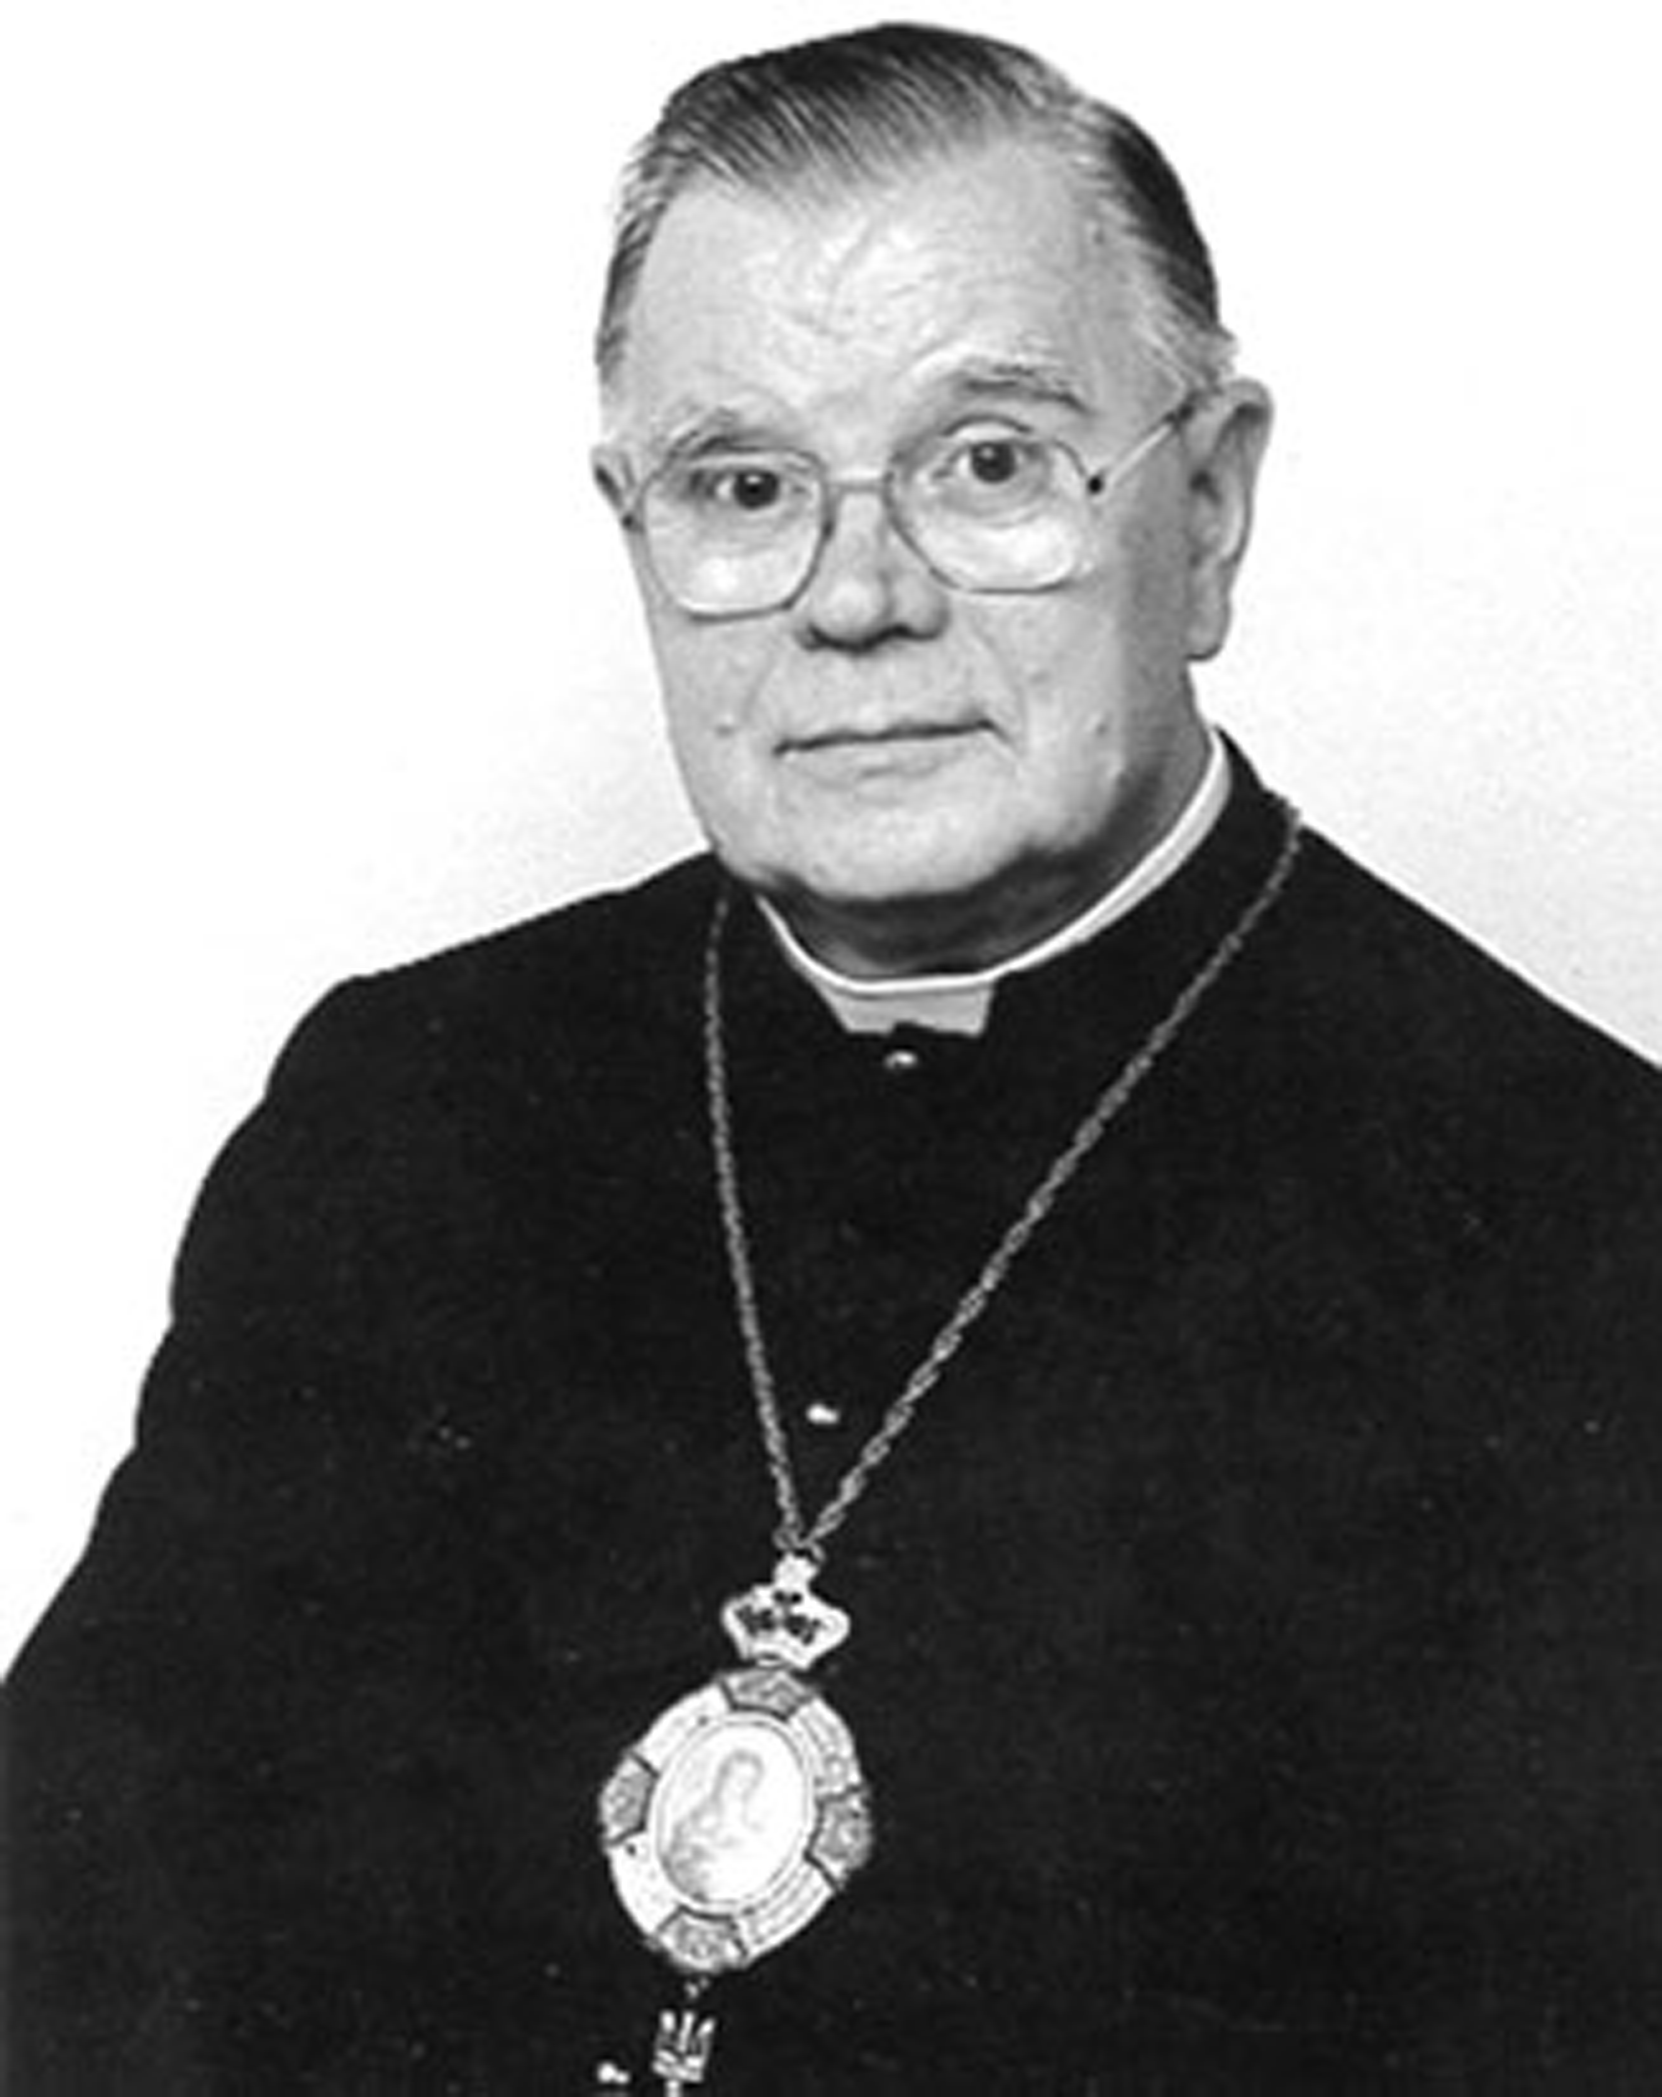 Bishop Prasko